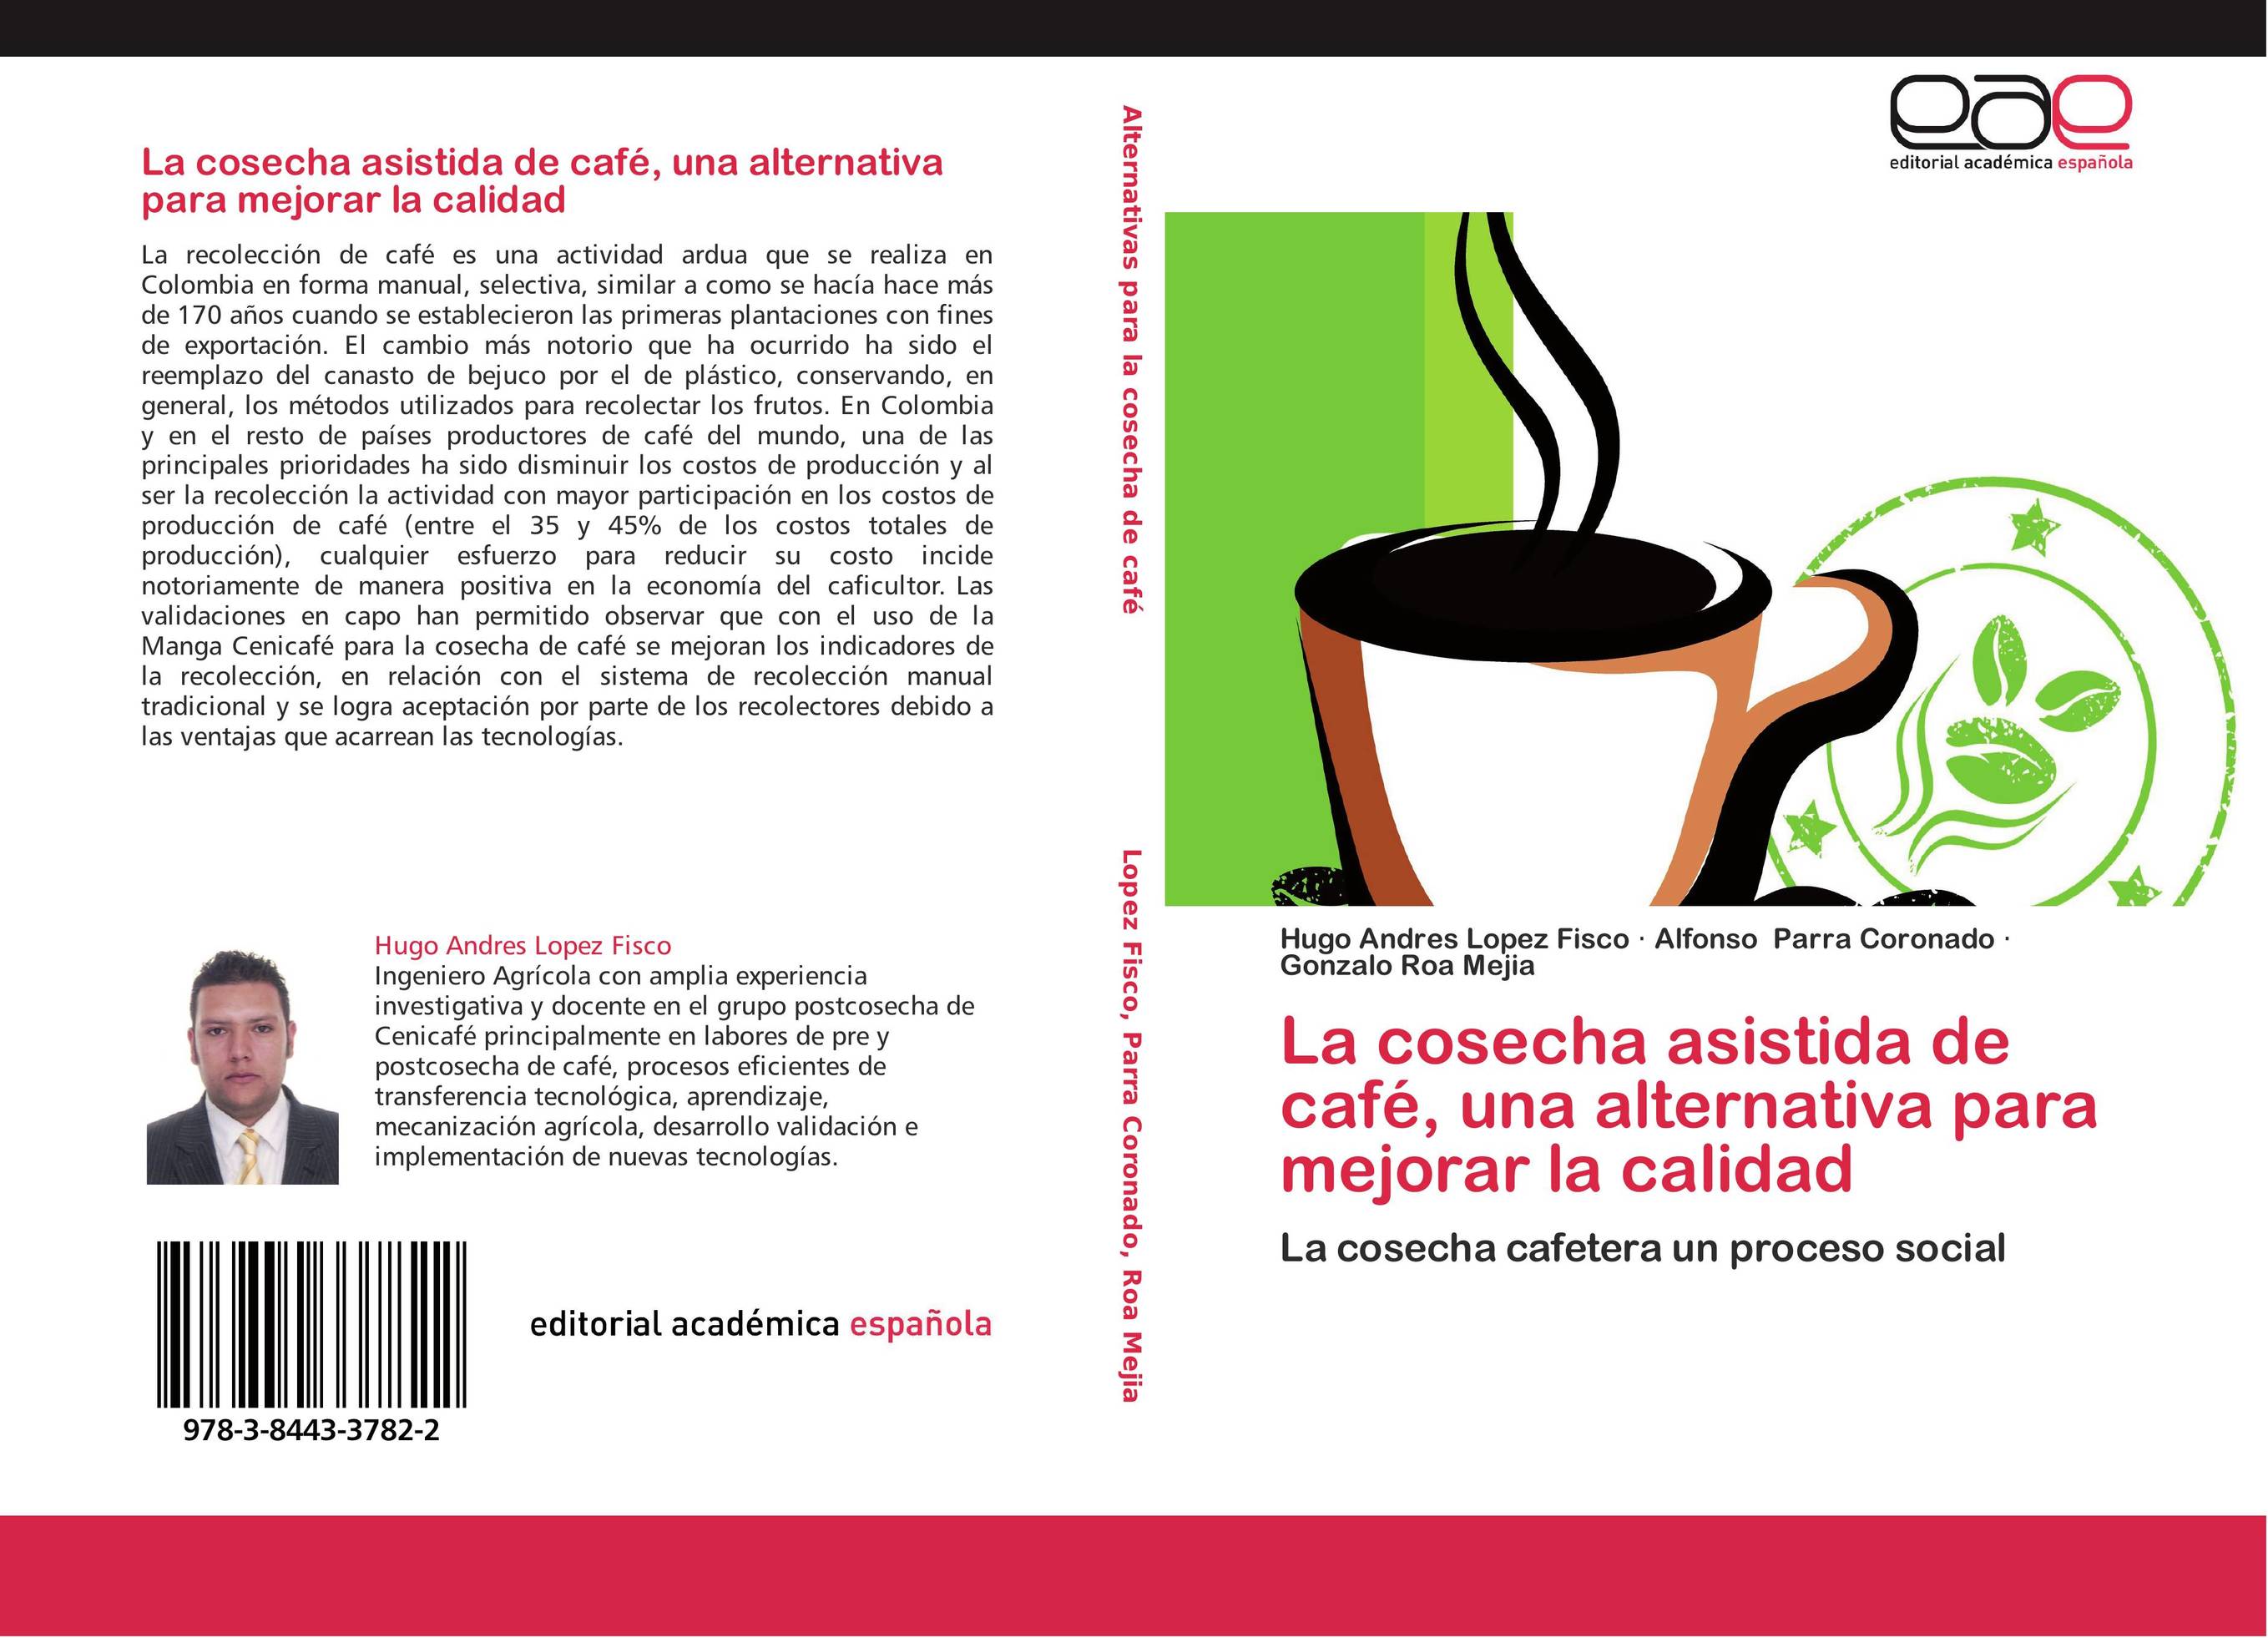 La cosecha asistida de café, una alternativa para mejorar la calidad.